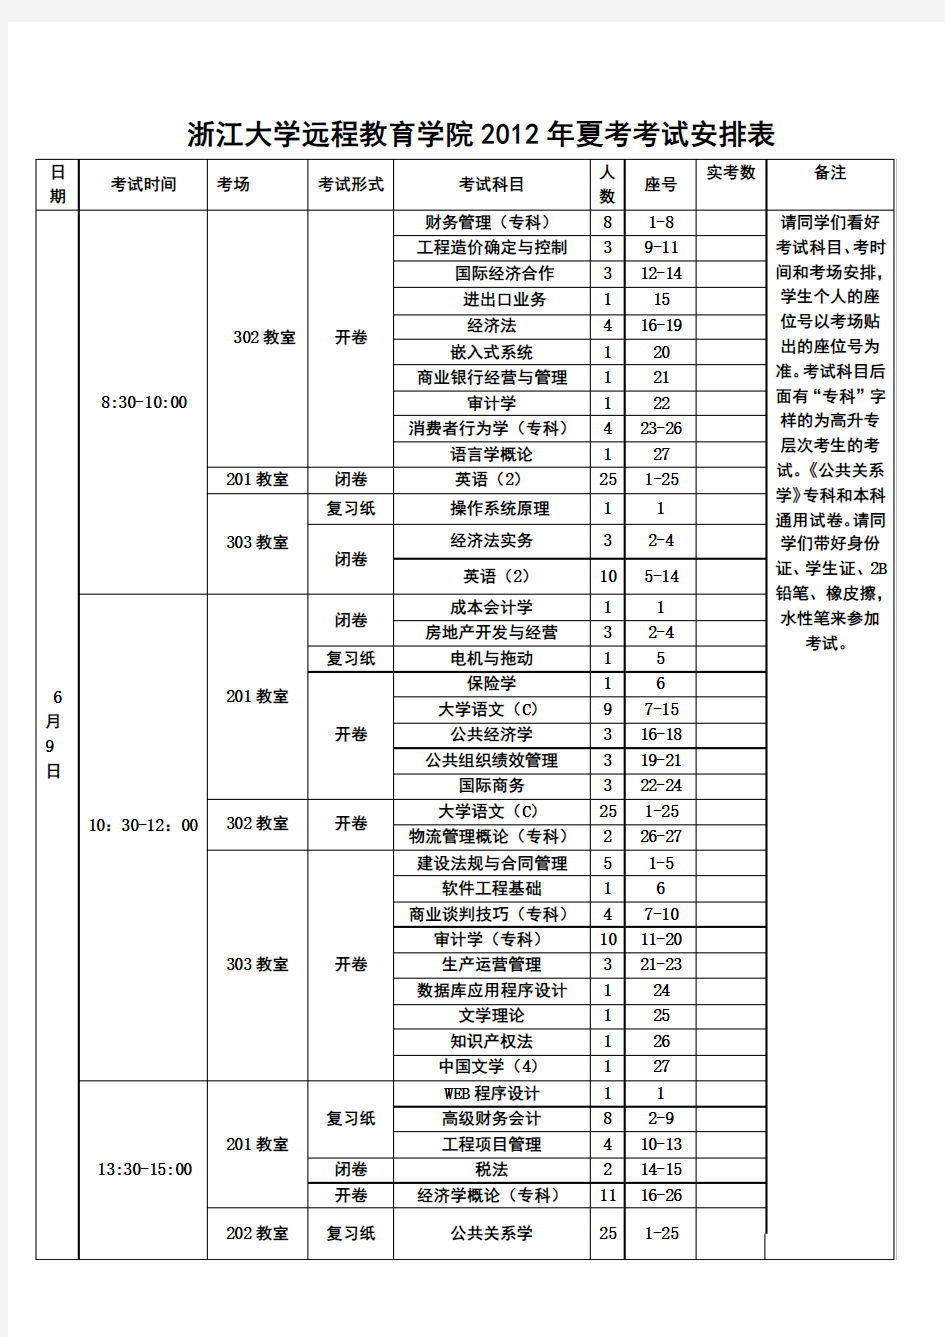 浙江大学远程教育学院2012夏考考试安排表第3项